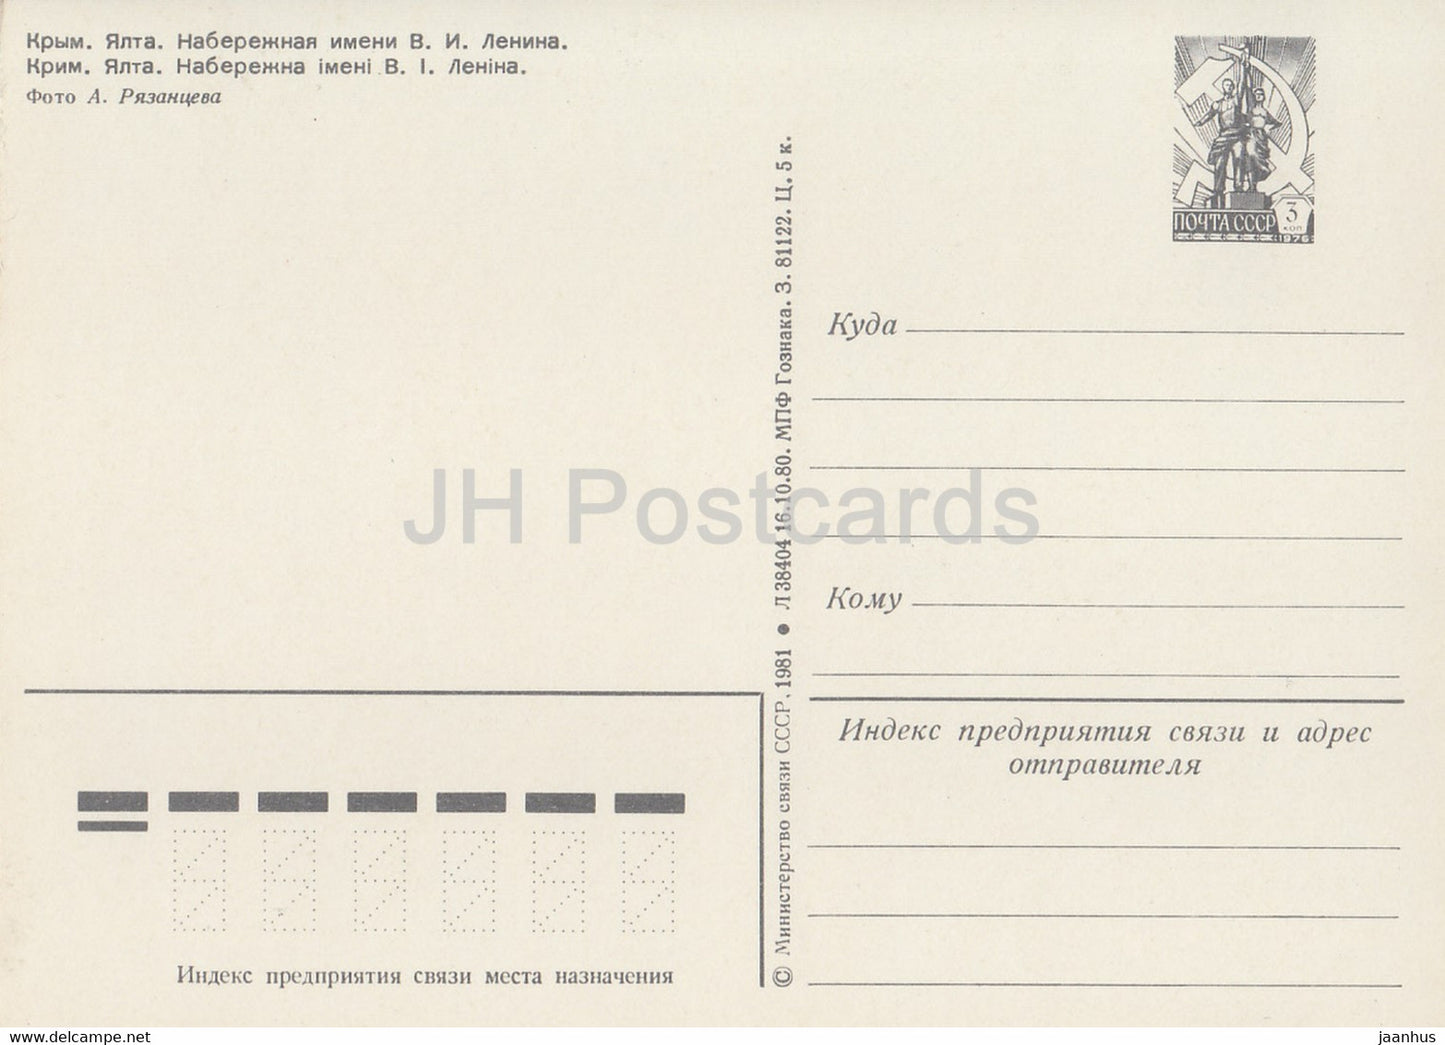 Crimea - Yalta - Lenin embankment - ship - postal stationery - 1981 - Ukraine USSR - unused